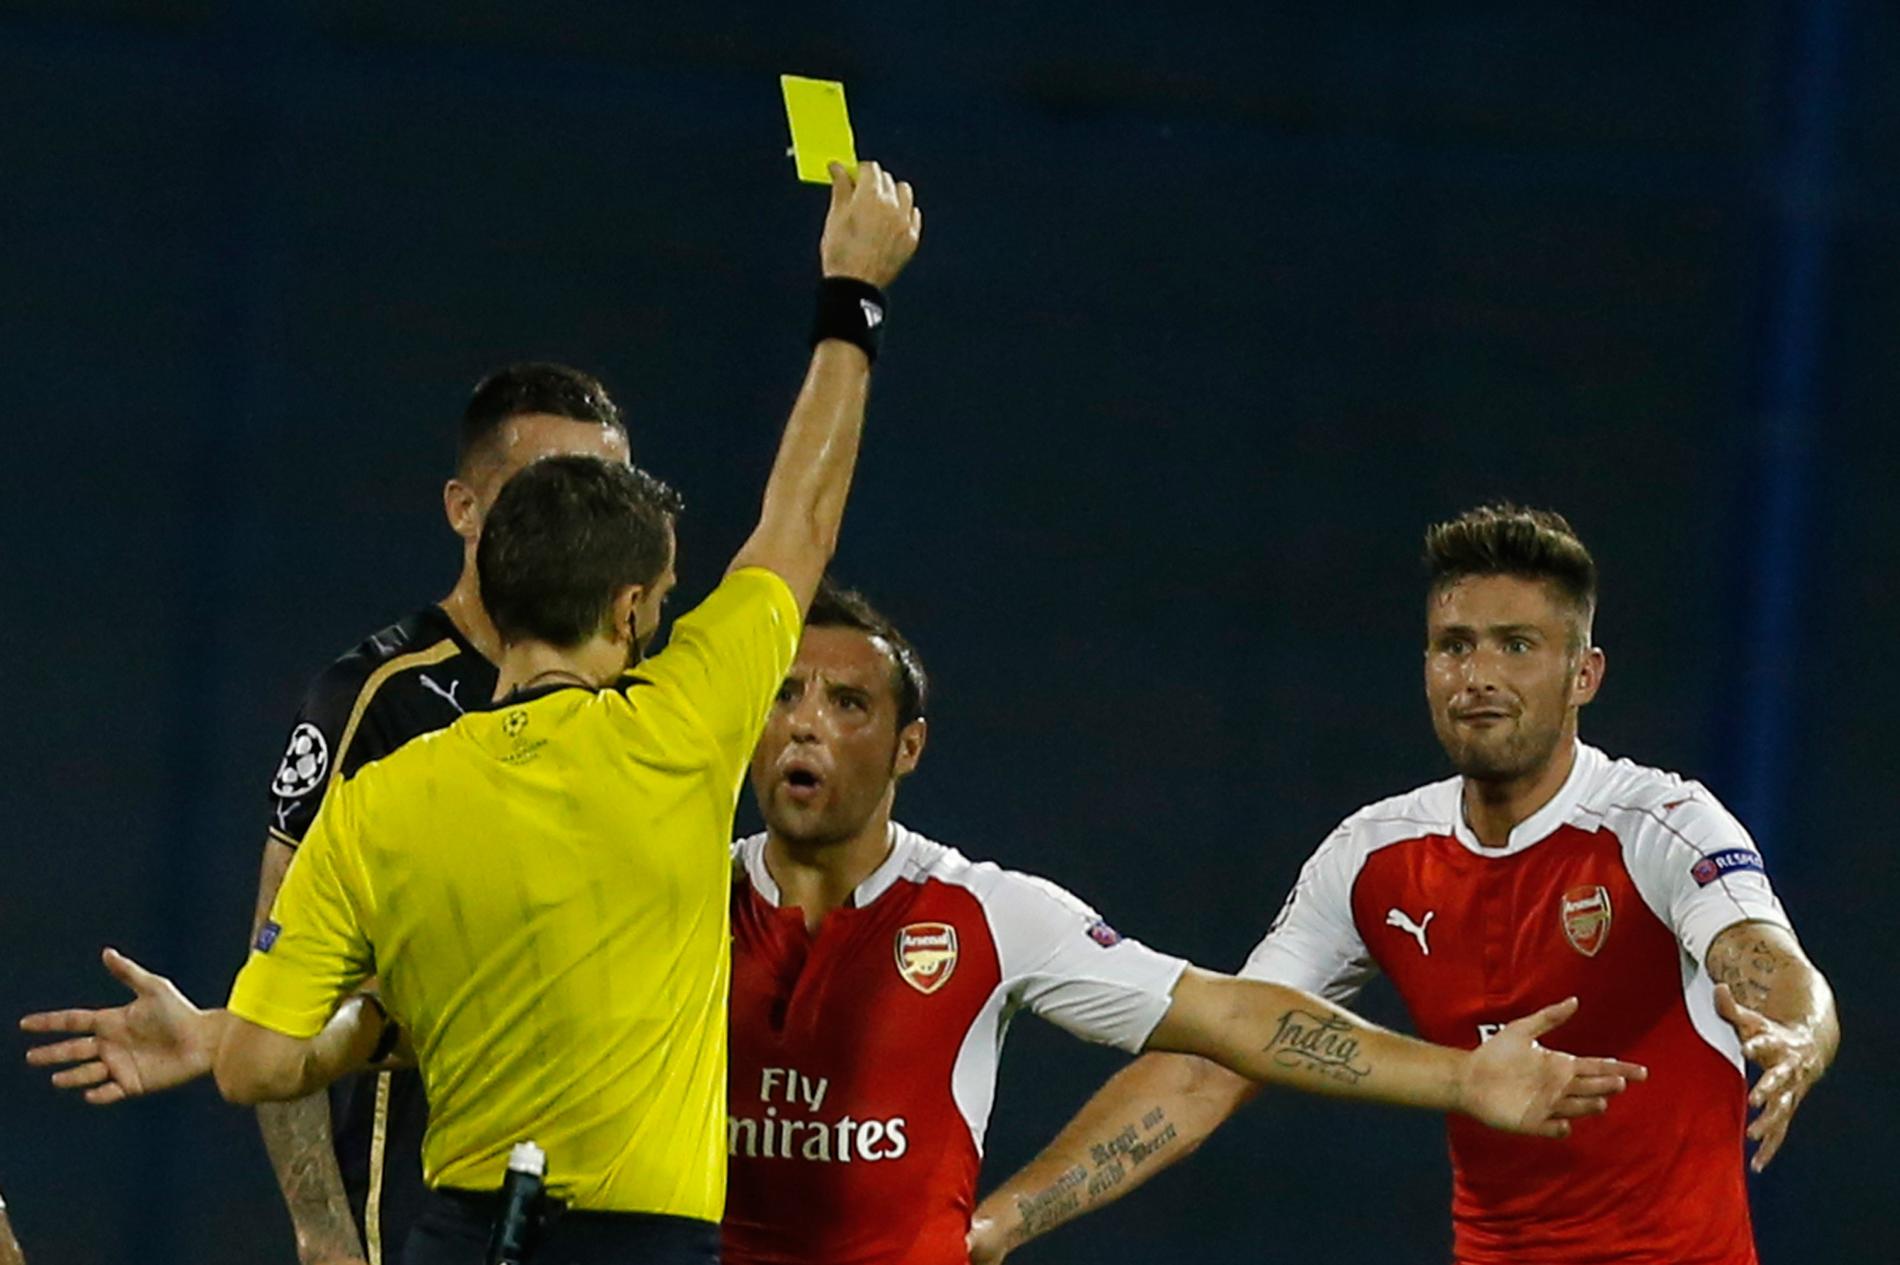 Gult kort för spel på Arsenal i FA-cupen, tycker Unibets Jonas Nilsson.